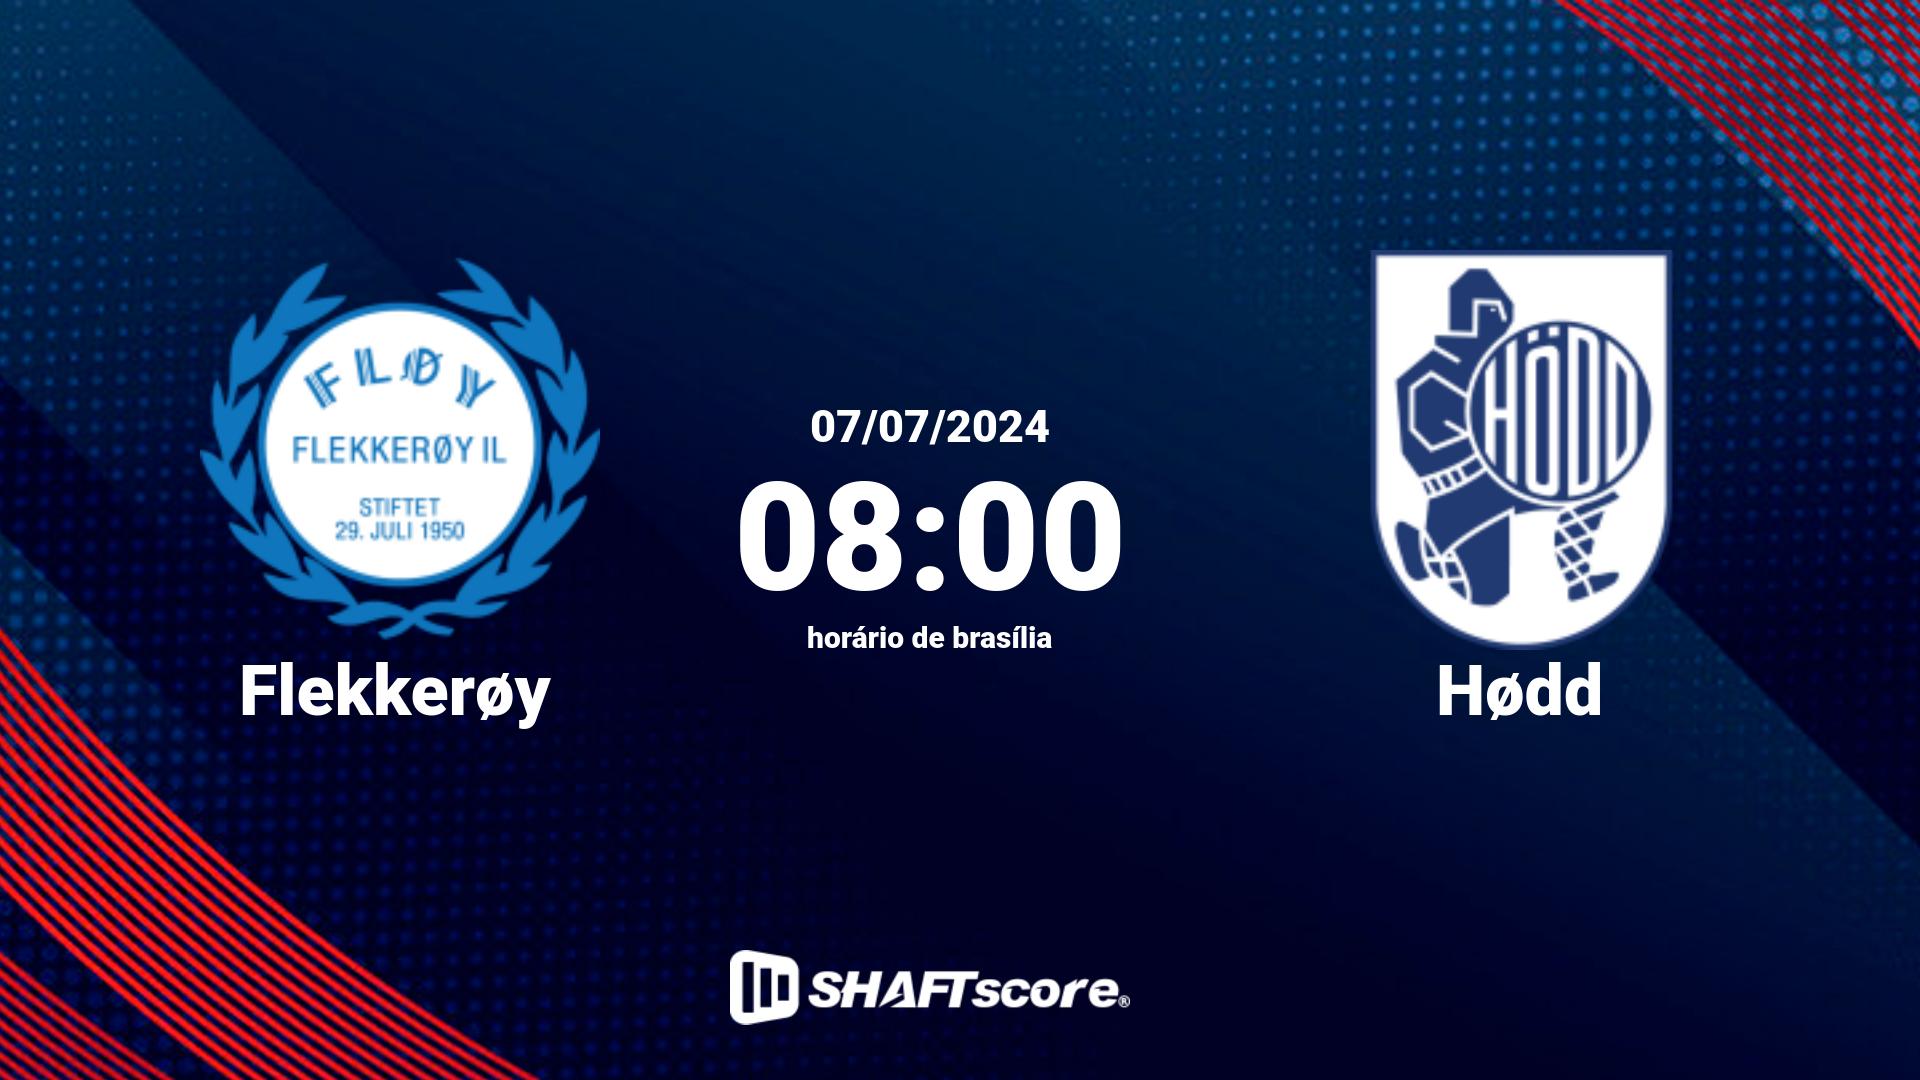 Estatísticas do jogo Flekkerøy vs Hødd 07.07 08:00